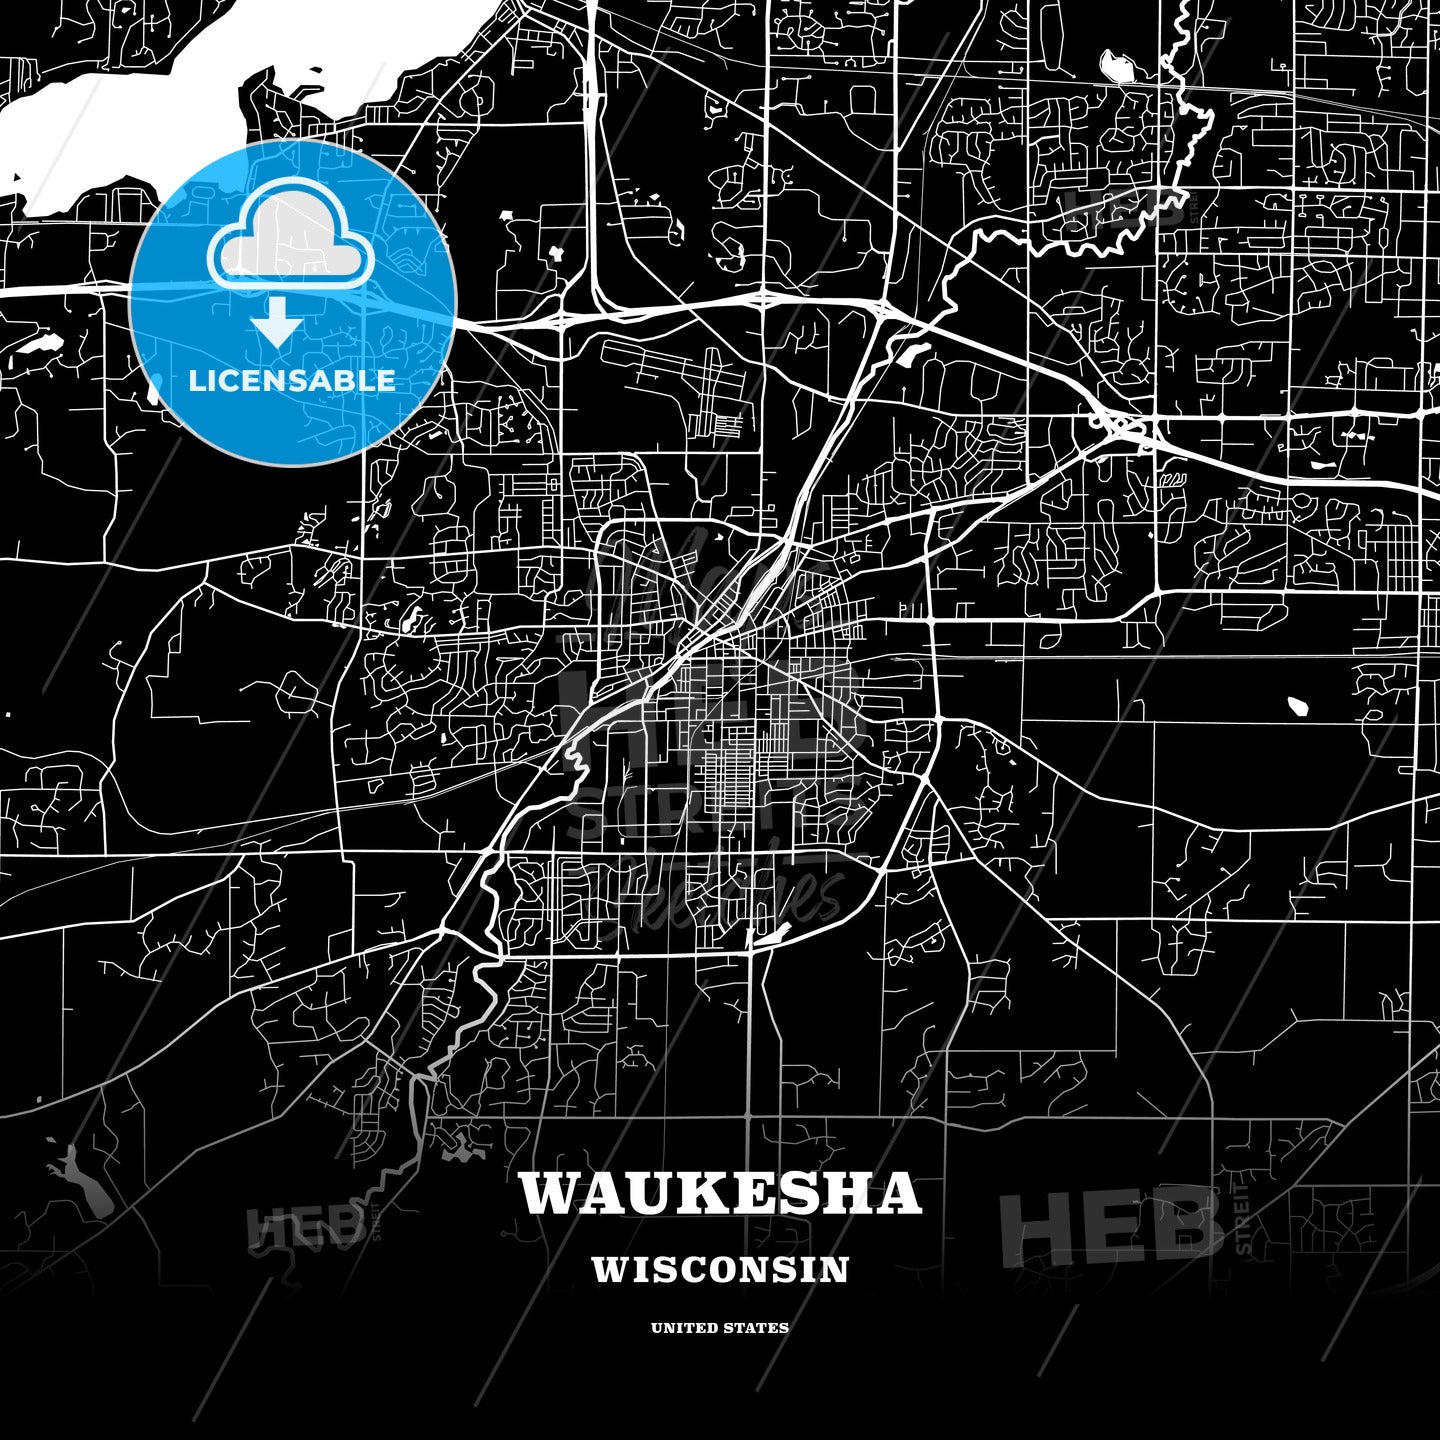 Waukesha, Wisconsin, USA map